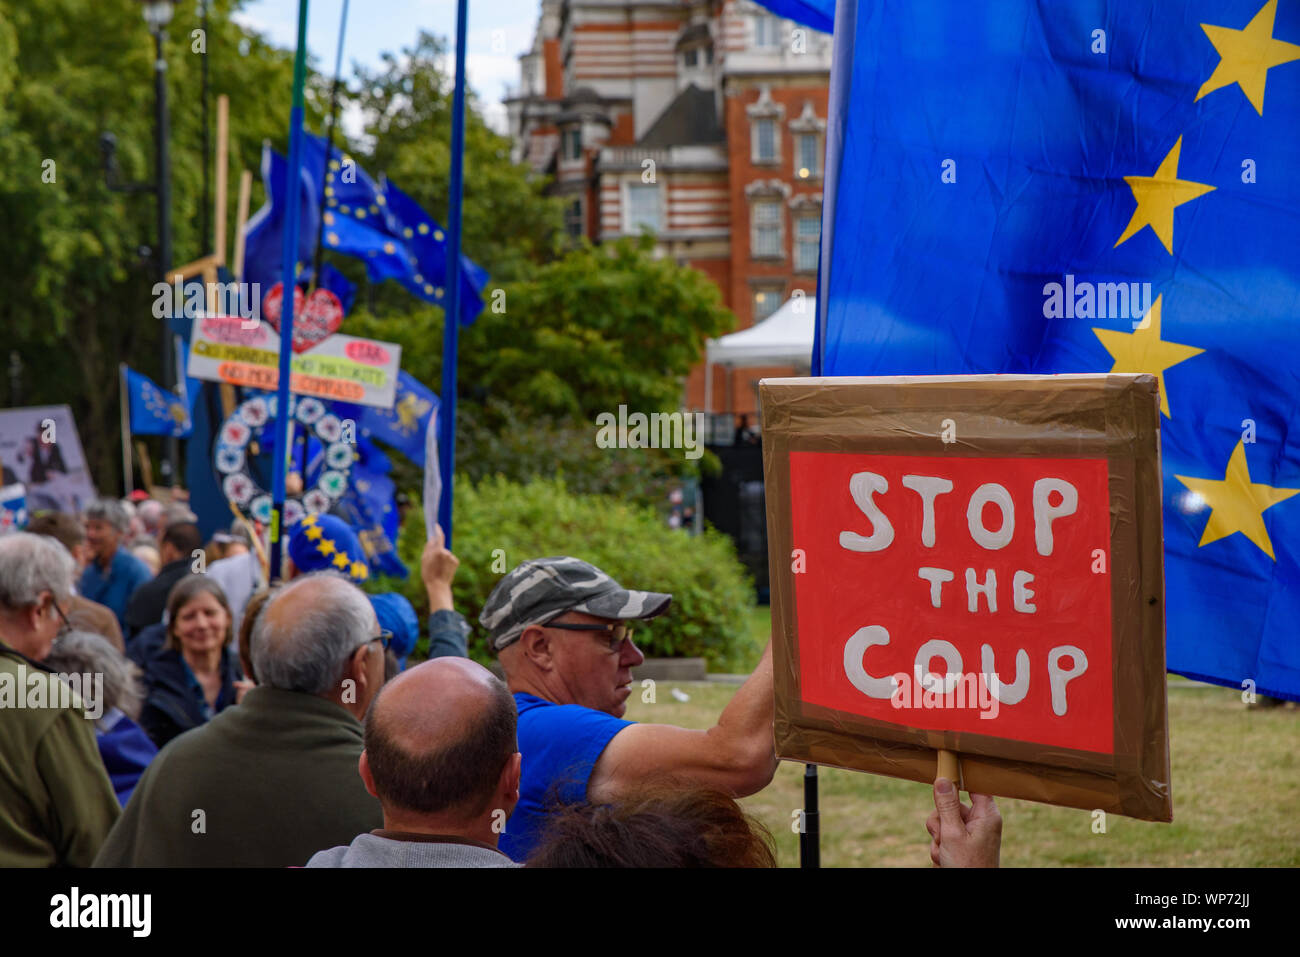 Personnes qui protestaient contre la non-deal Brexit, Boris Johnson, le Premier Ministre du Royaume-Uni, et le gouvernement du Royaume-Uni à la place du Parlement, Londres Banque D'Images